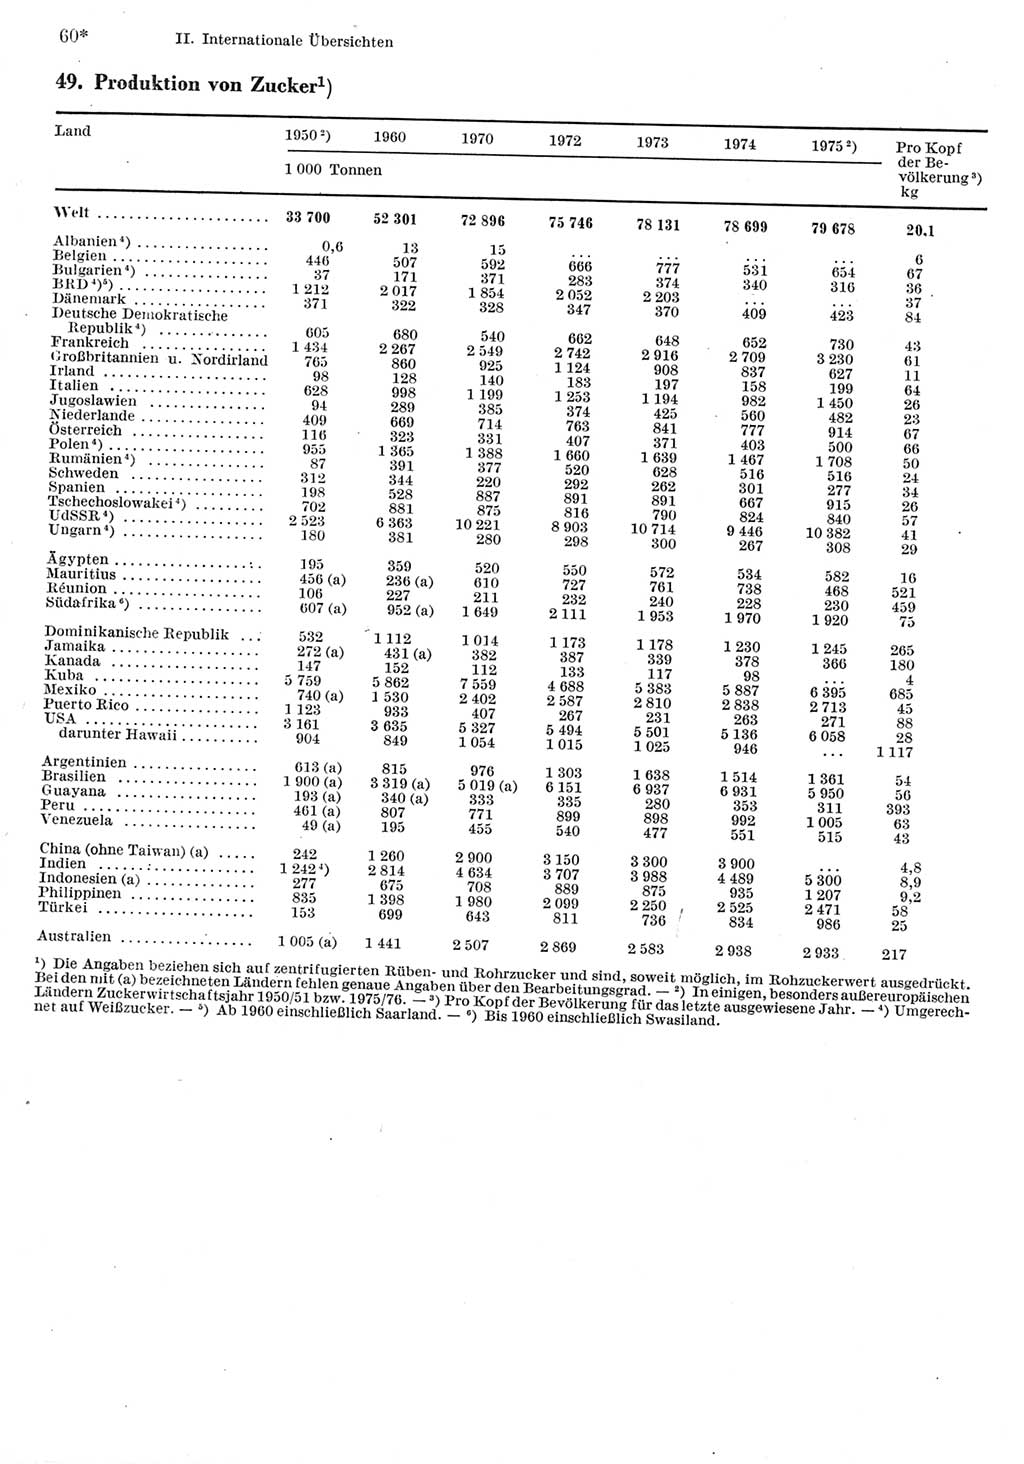 Statistisches Jahrbuch der Deutschen Demokratischen Republik (DDR) 1977, Seite 60 (Stat. Jb. DDR 1977, S. 60)